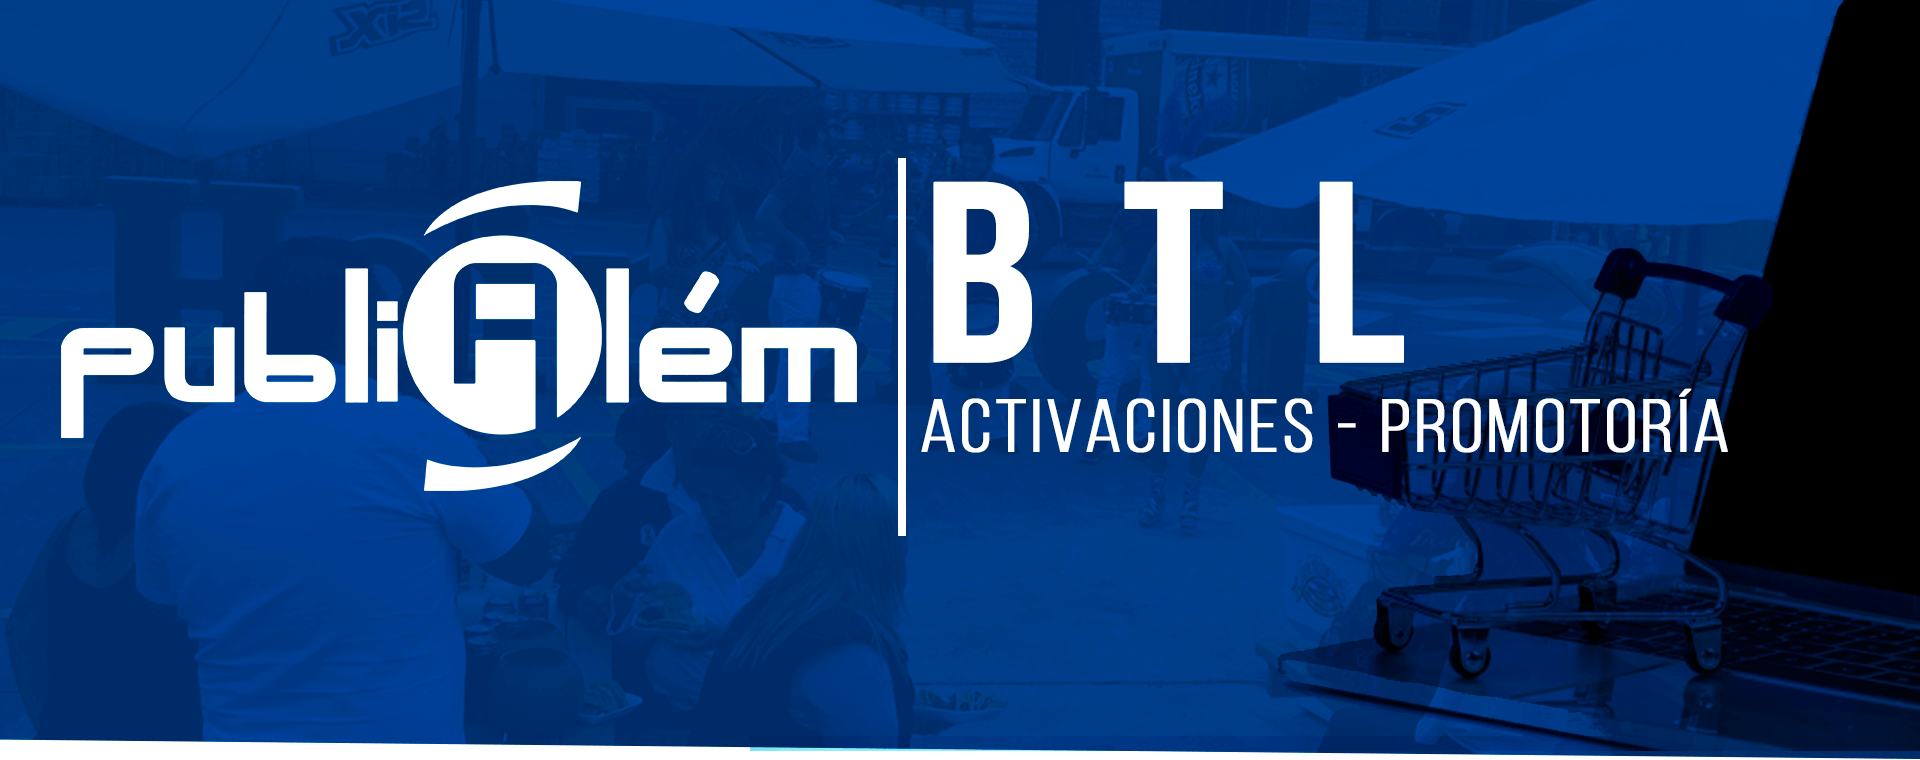 campañas btl, activaciones y promotoria en cdmx - PubliAlém | Agencia de publicidad en CDMX 